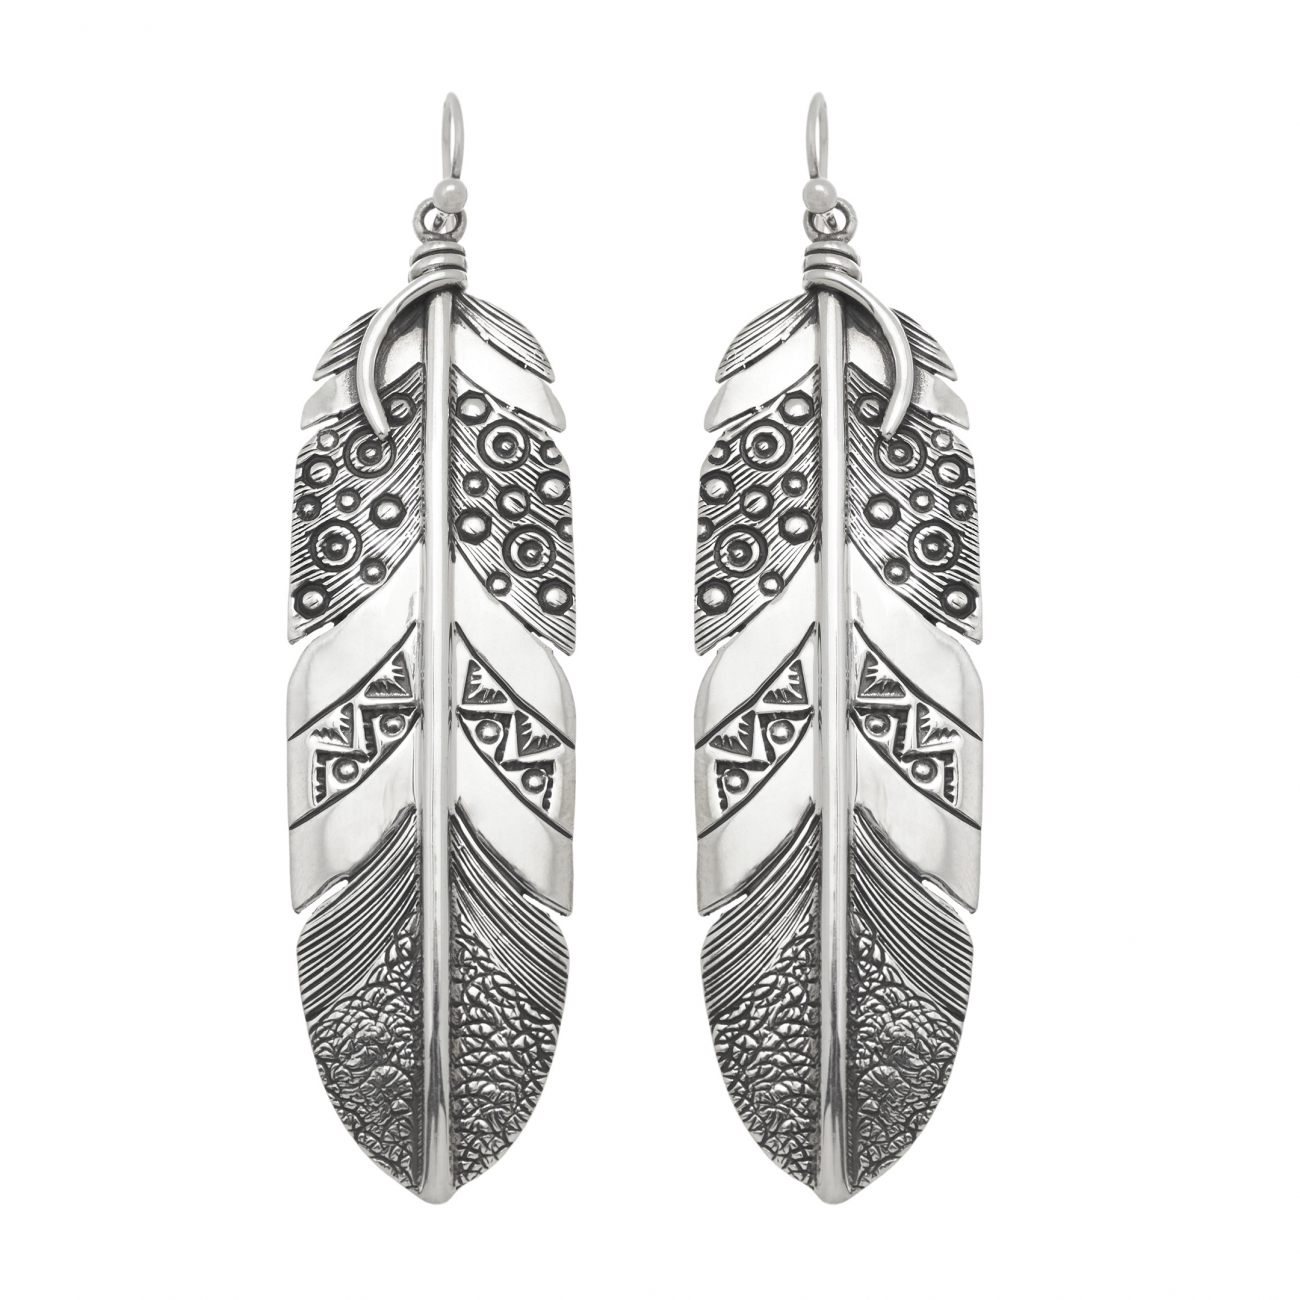 Harpo Paris earrings BO156 silver feather